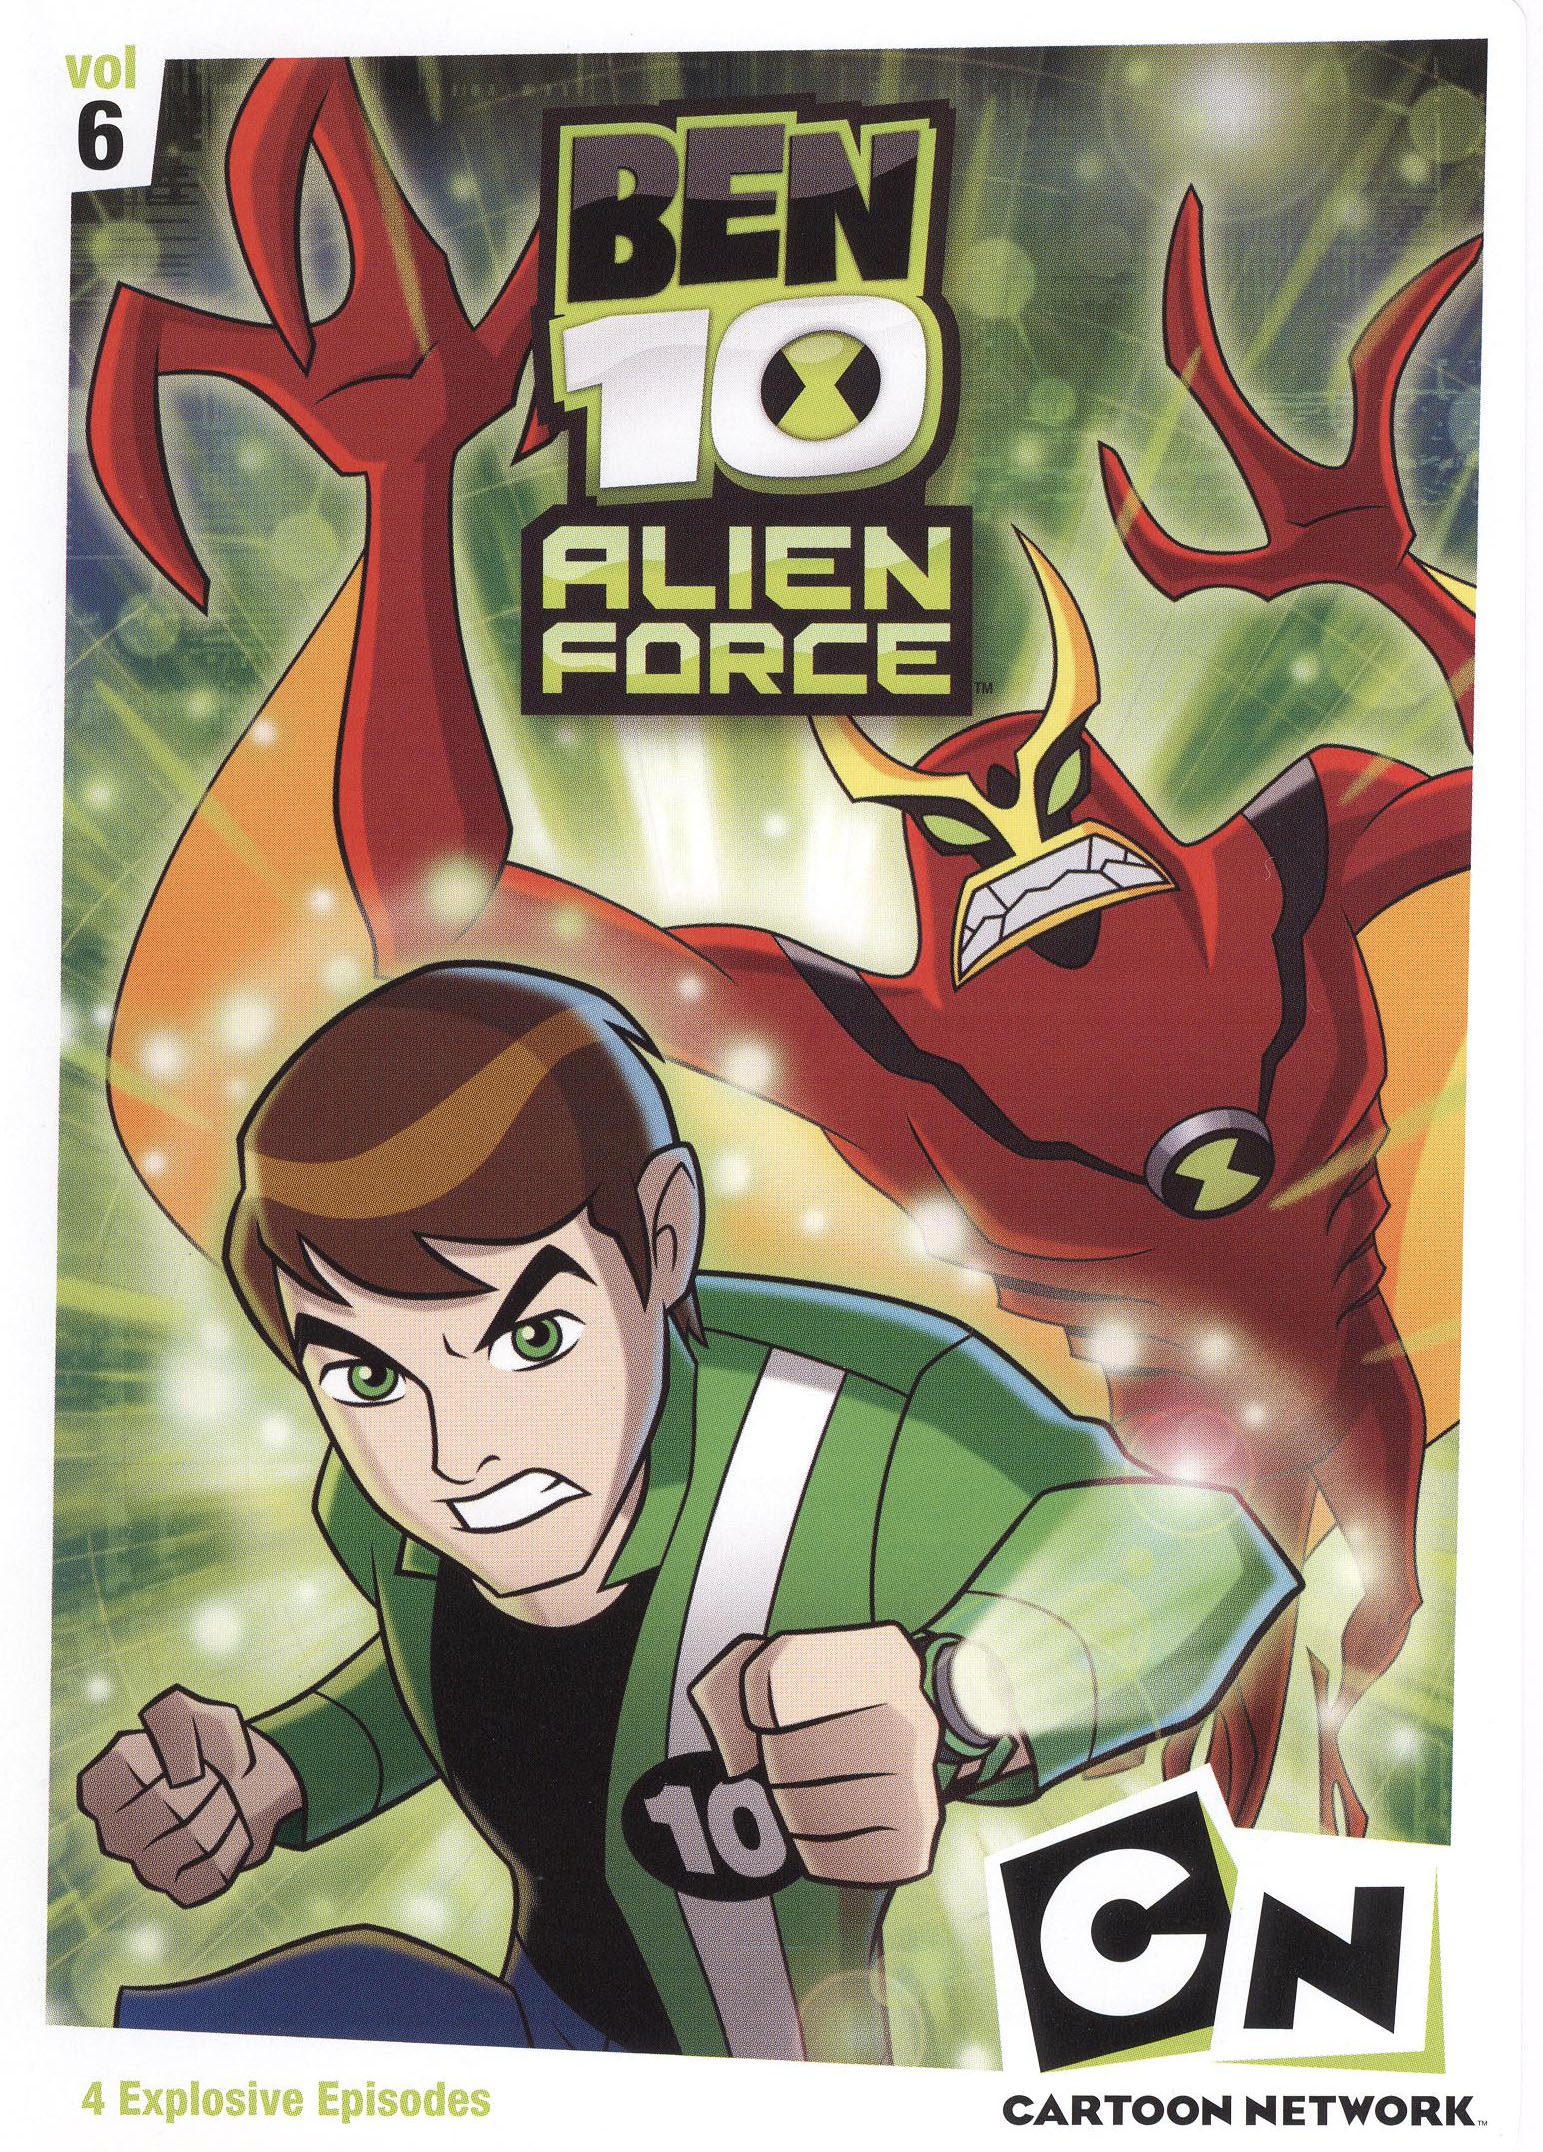 4 Kid Favorites: The Ben 10 Alien Force Collection [4 Discs] - Best Buy